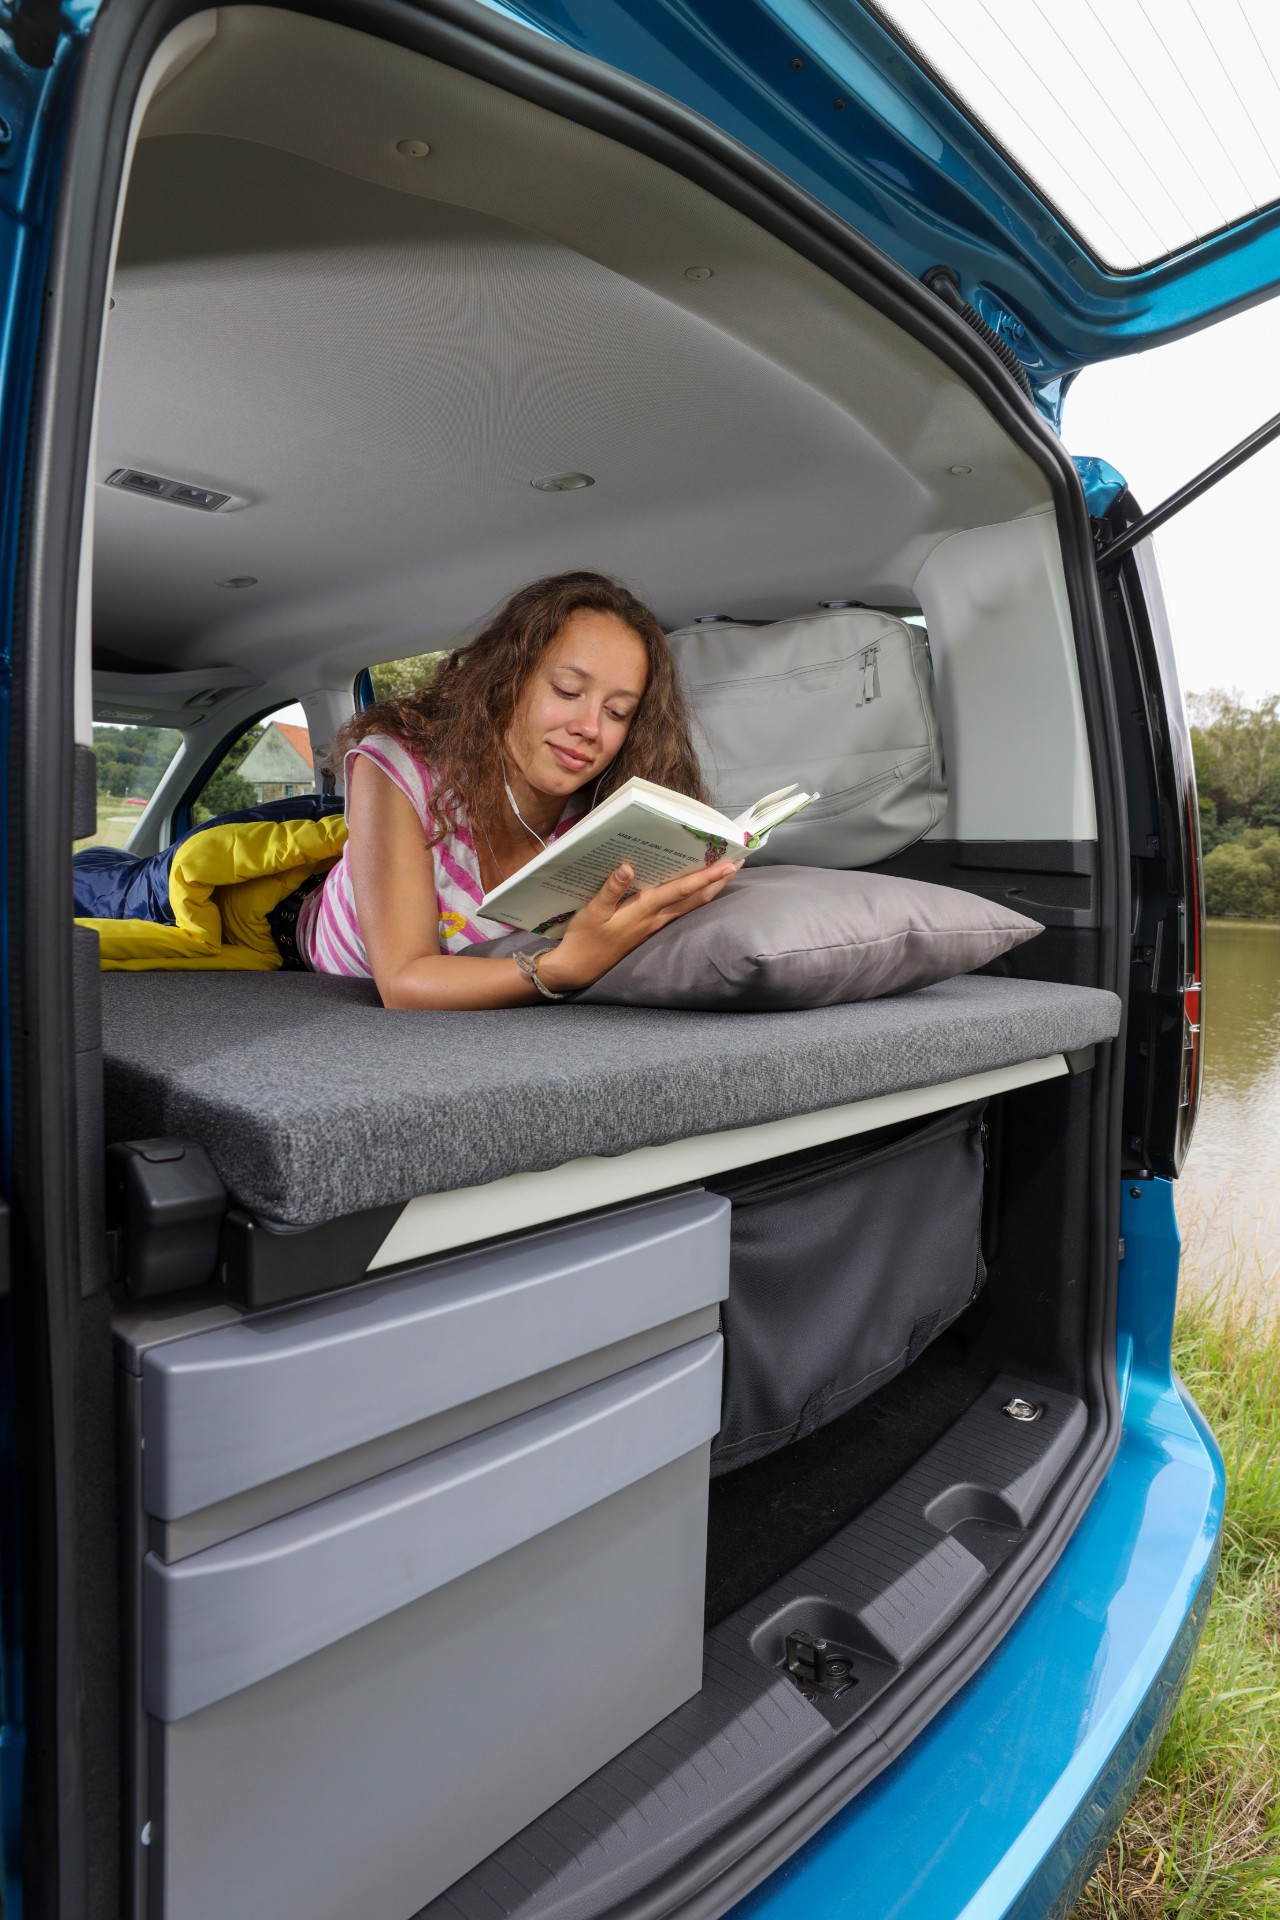 Volkswagen Caddy van gets the California camper treatment